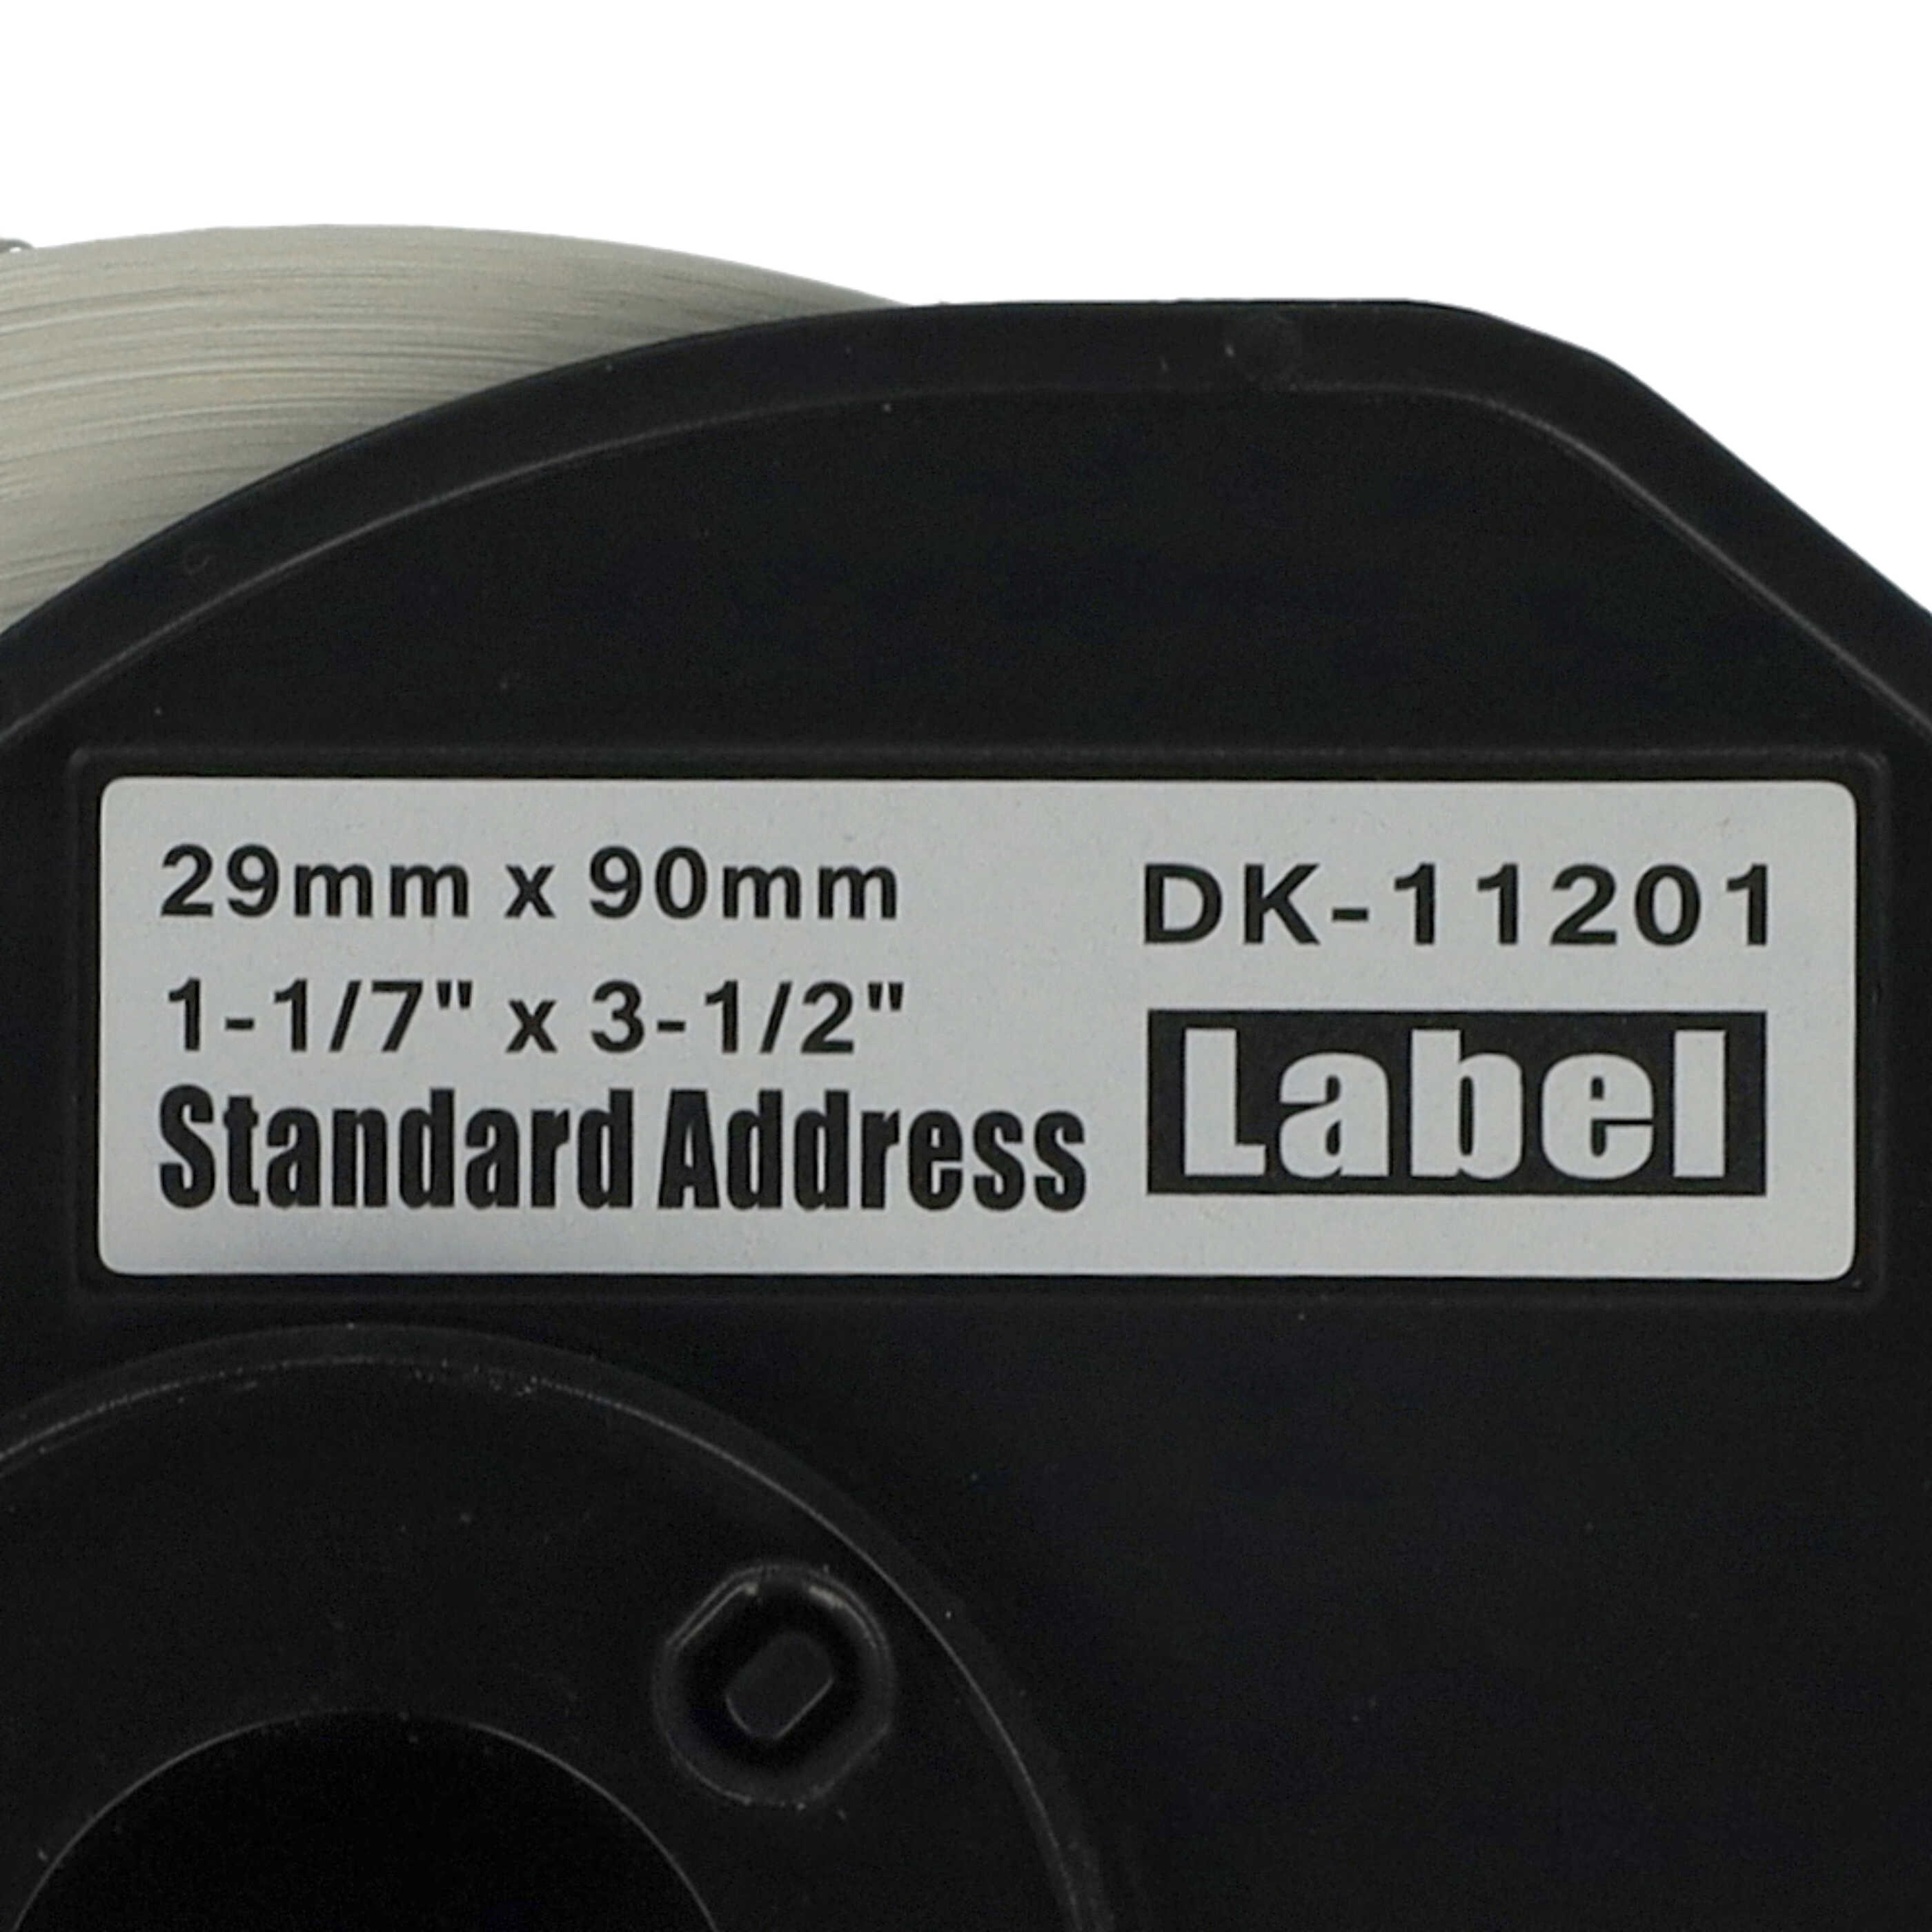 Rotolo etichette sostituisce Brother DK-11201 per etichettatrice - 29mm x 90mm + supporto